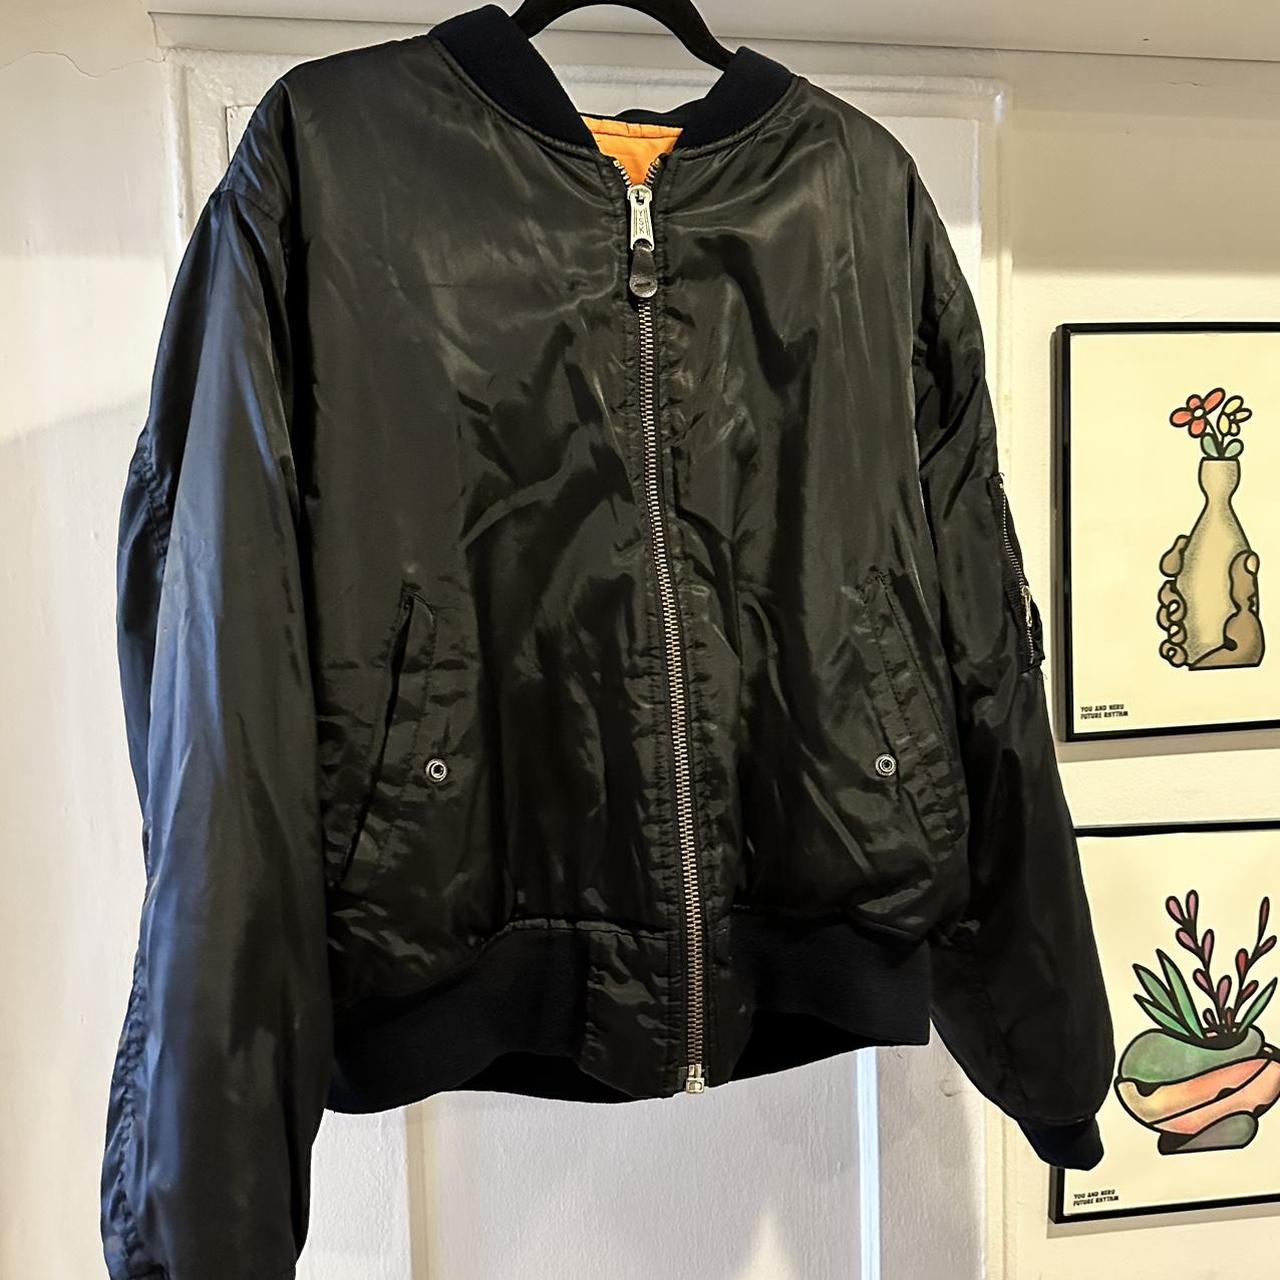 Vintage bomber jacket #bomber - Depop